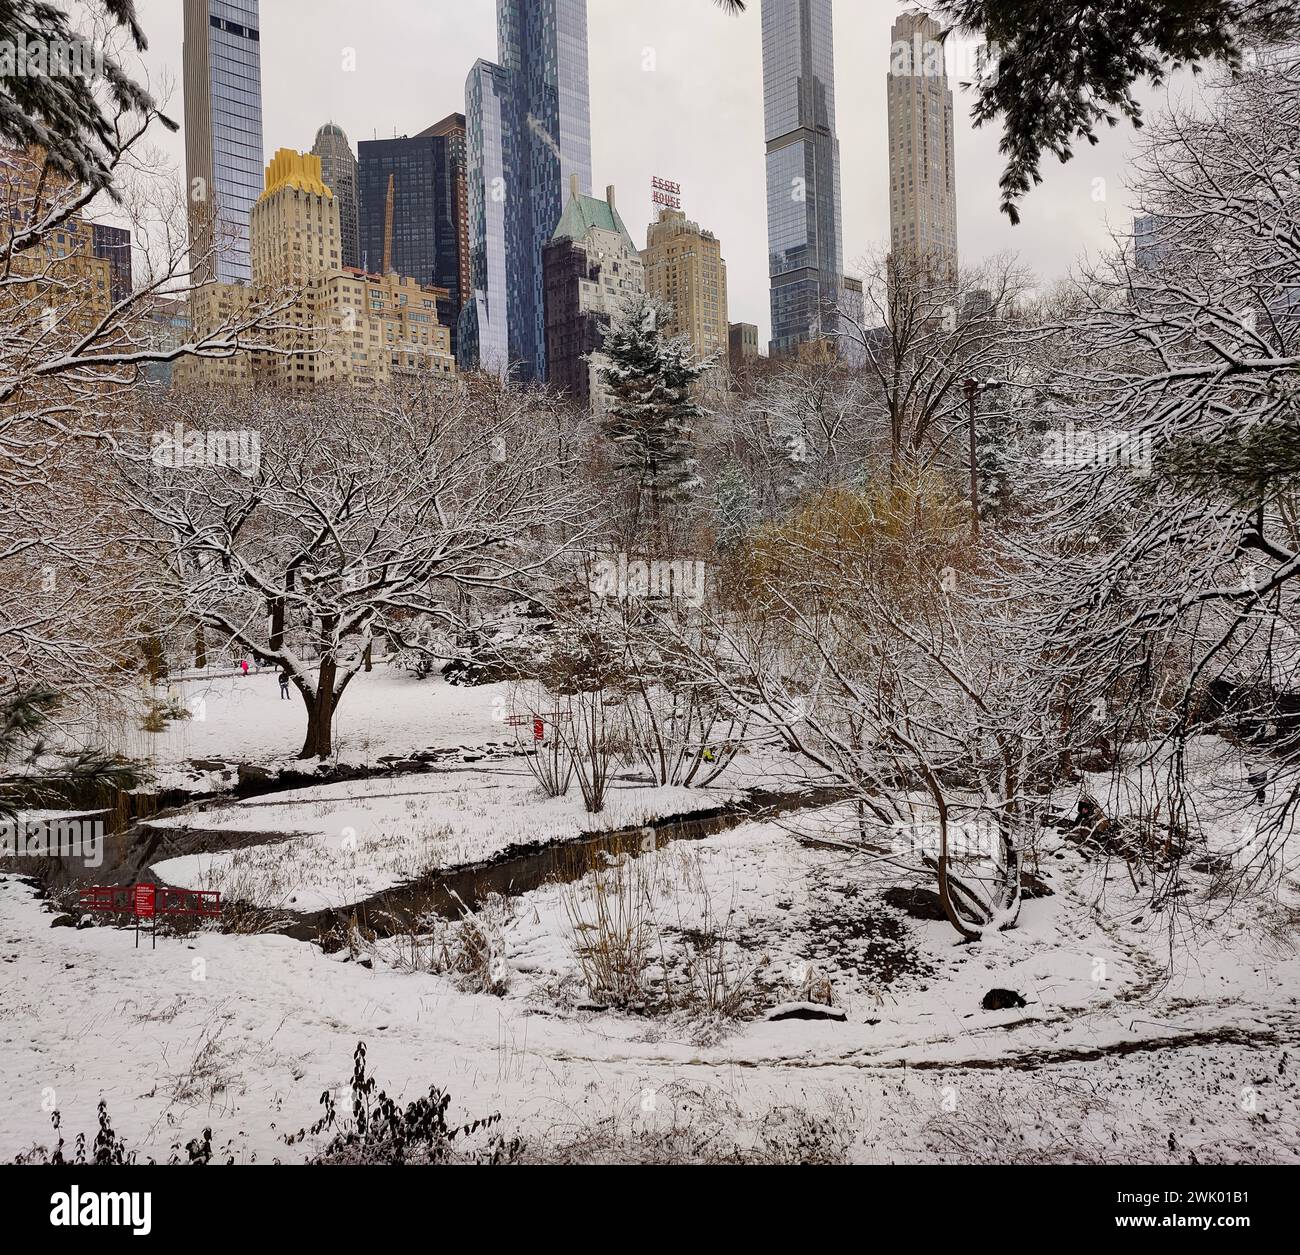 New York, États-Unis. 17 février 2024. Neige à Central Park - les chutes de neige de la nuit ont laissé le parc couvert de neige dans la matinée du 17 février. Glyn Thomas/Alamy Live News Banque D'Images